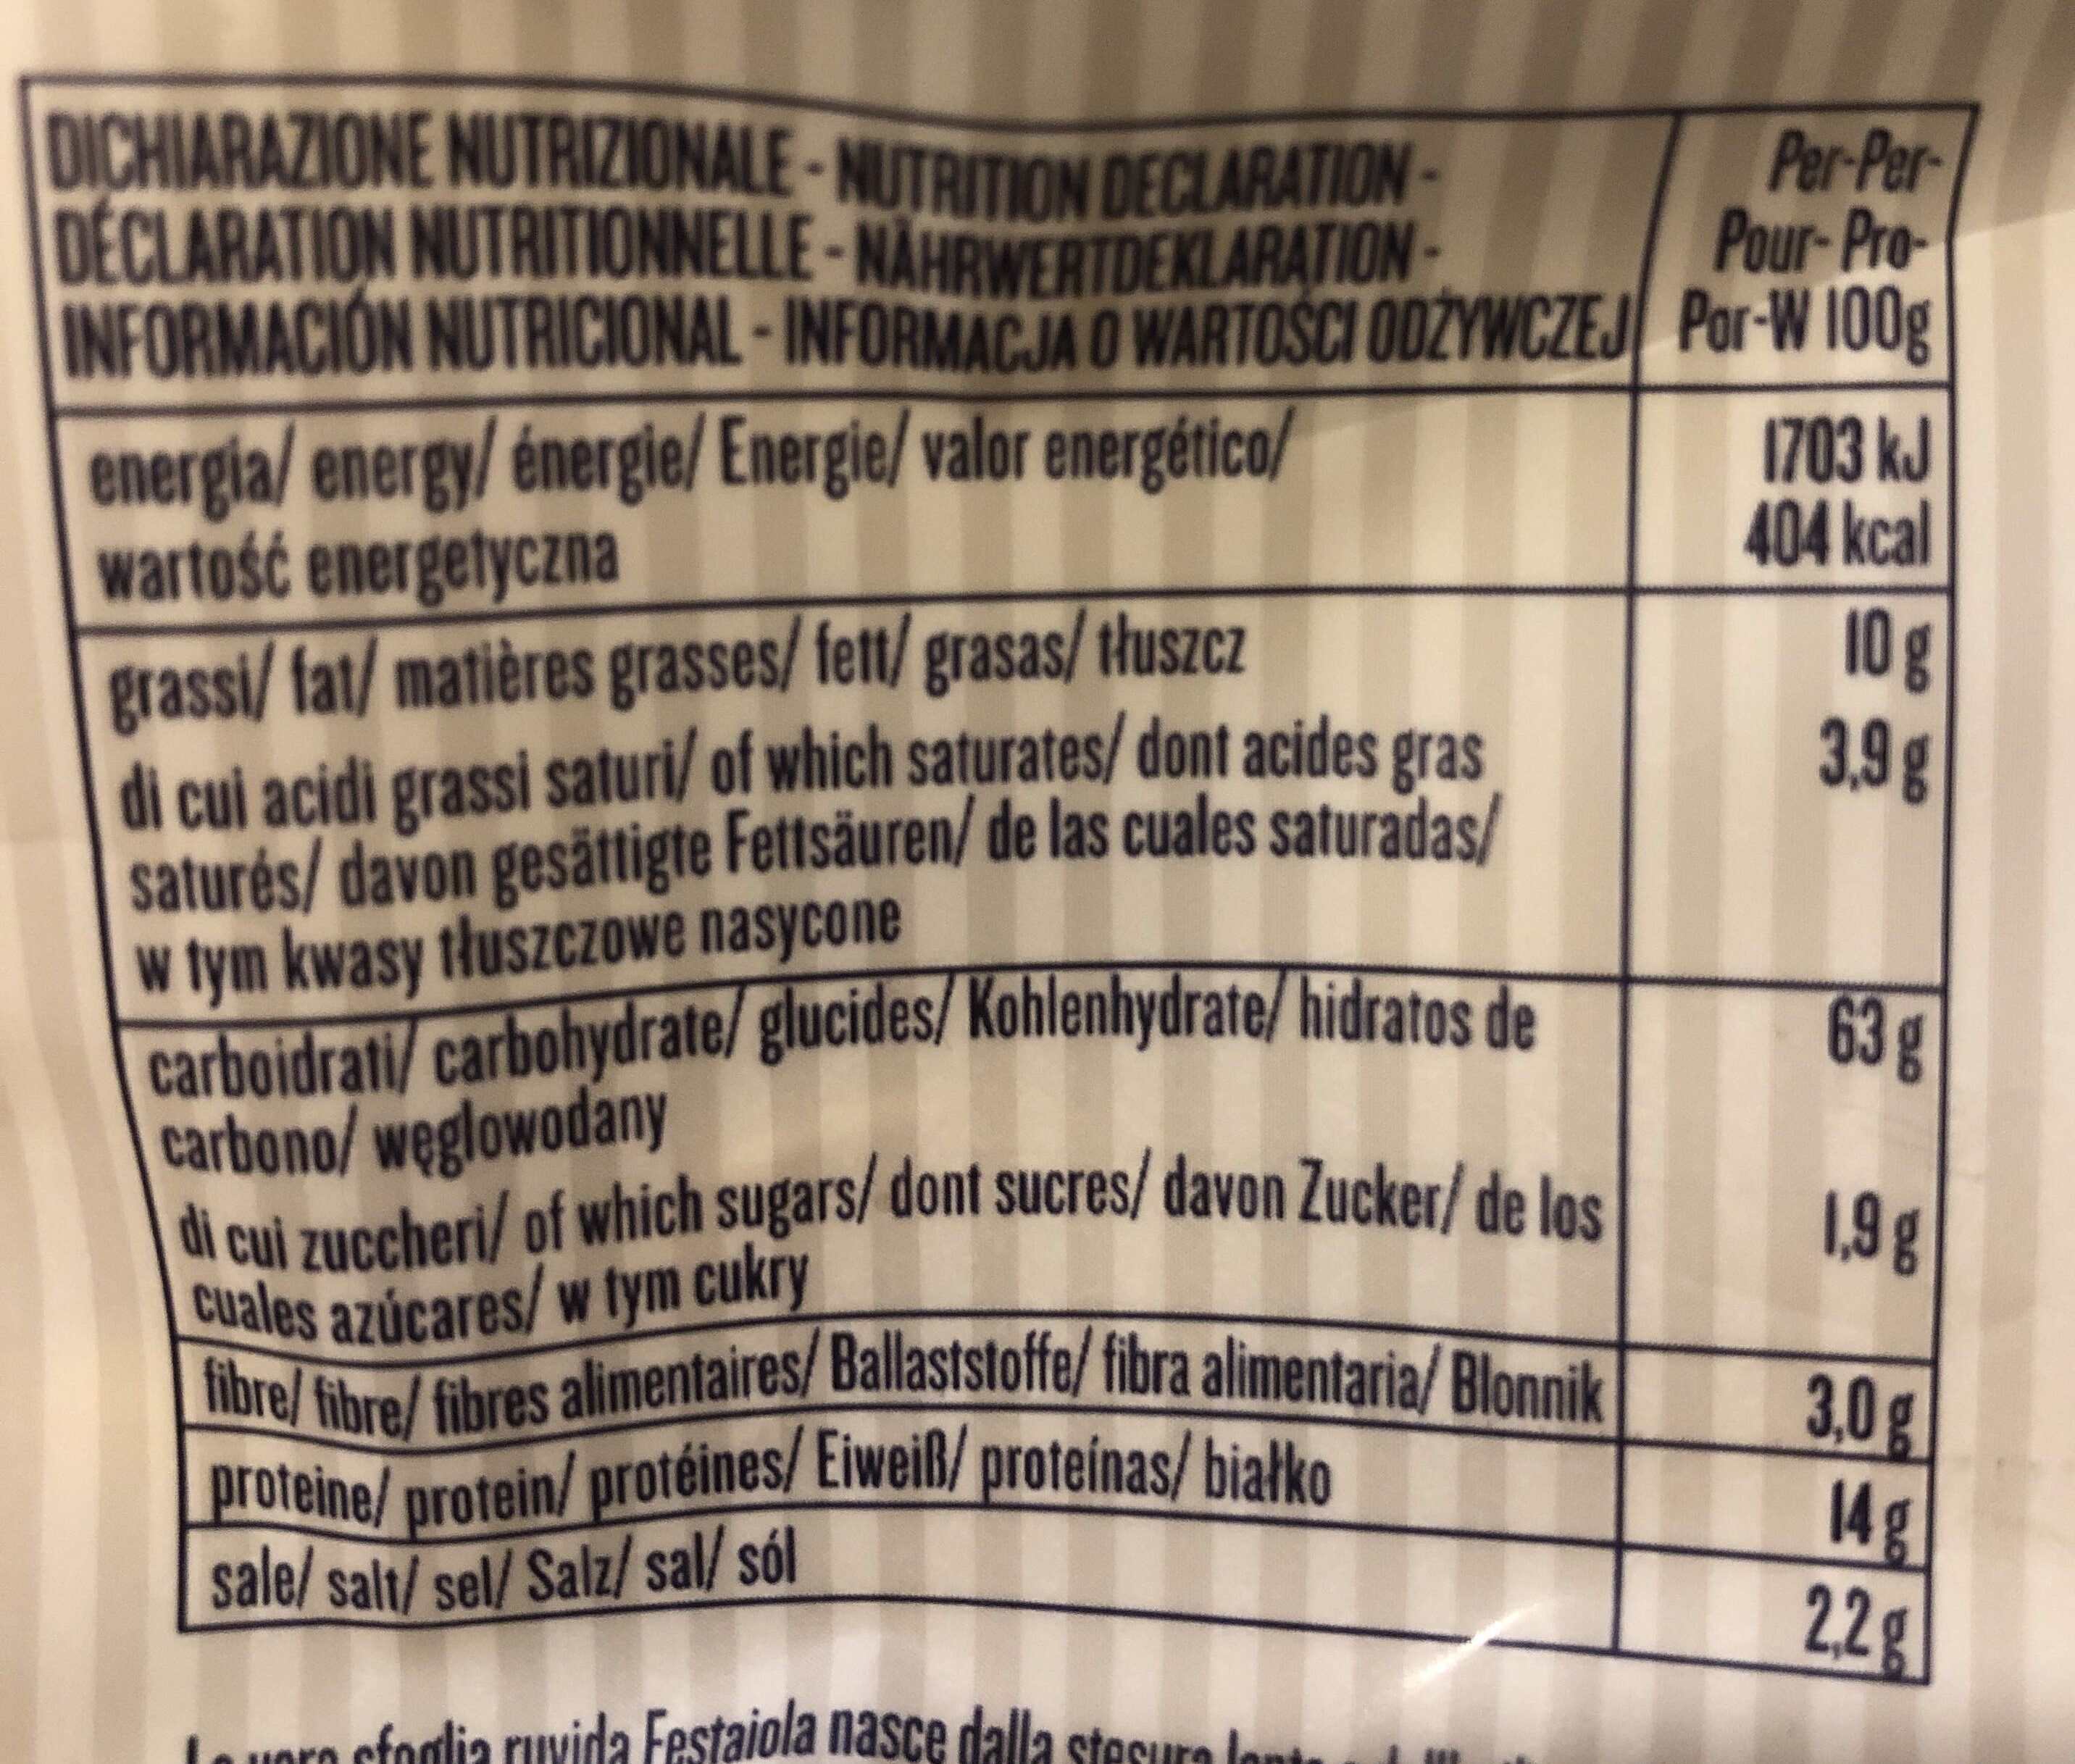 Festaiola Tortellini Al Prosciutto Crudo - Nutrition facts - it